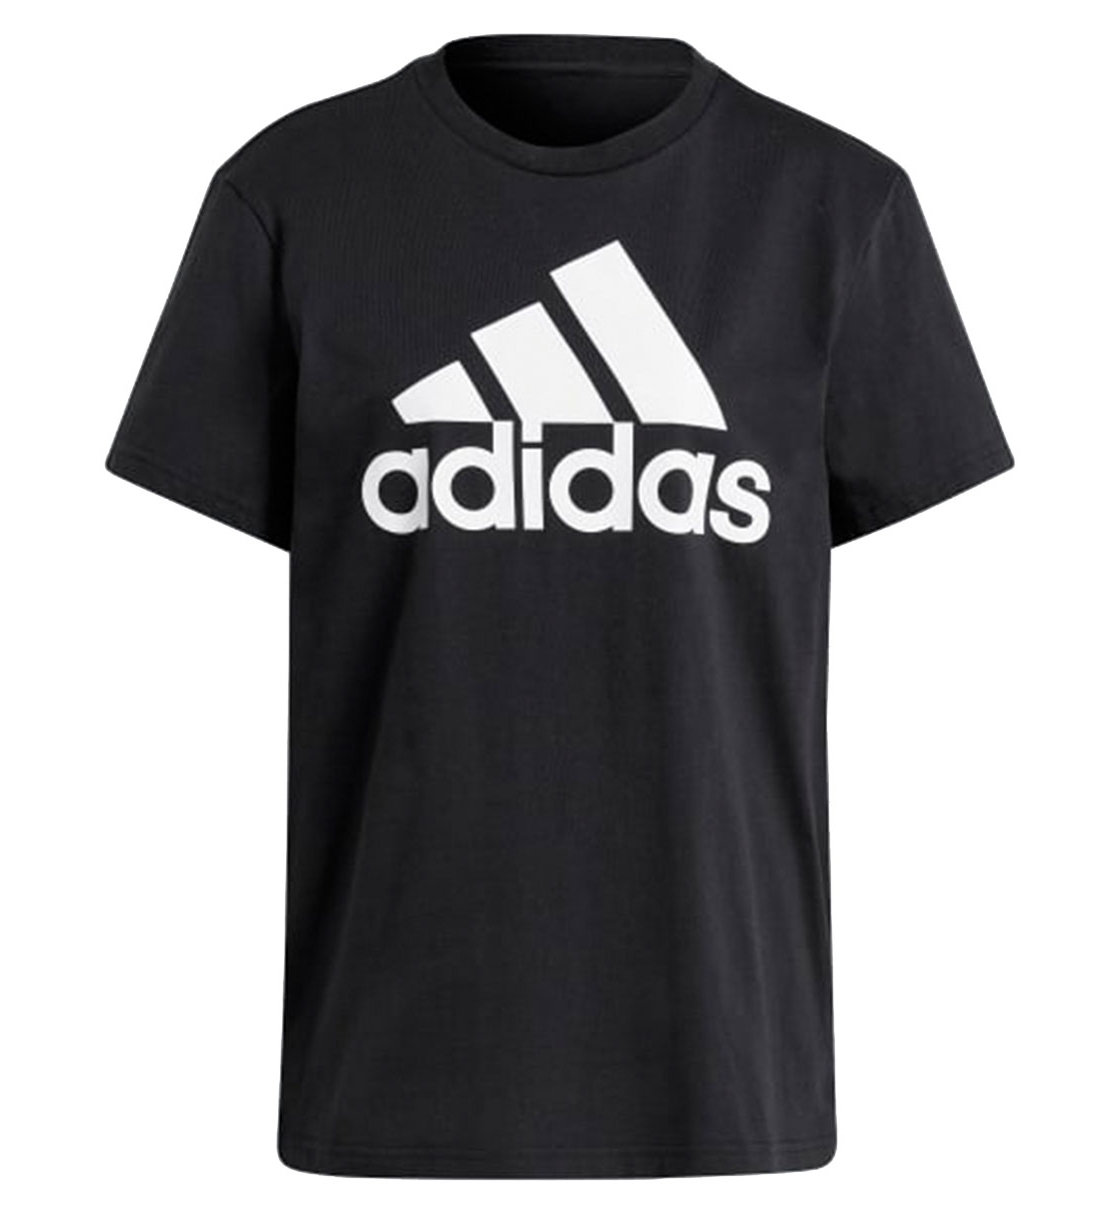 Adidas Ss21 Essentials Boyfriend T-Shirt